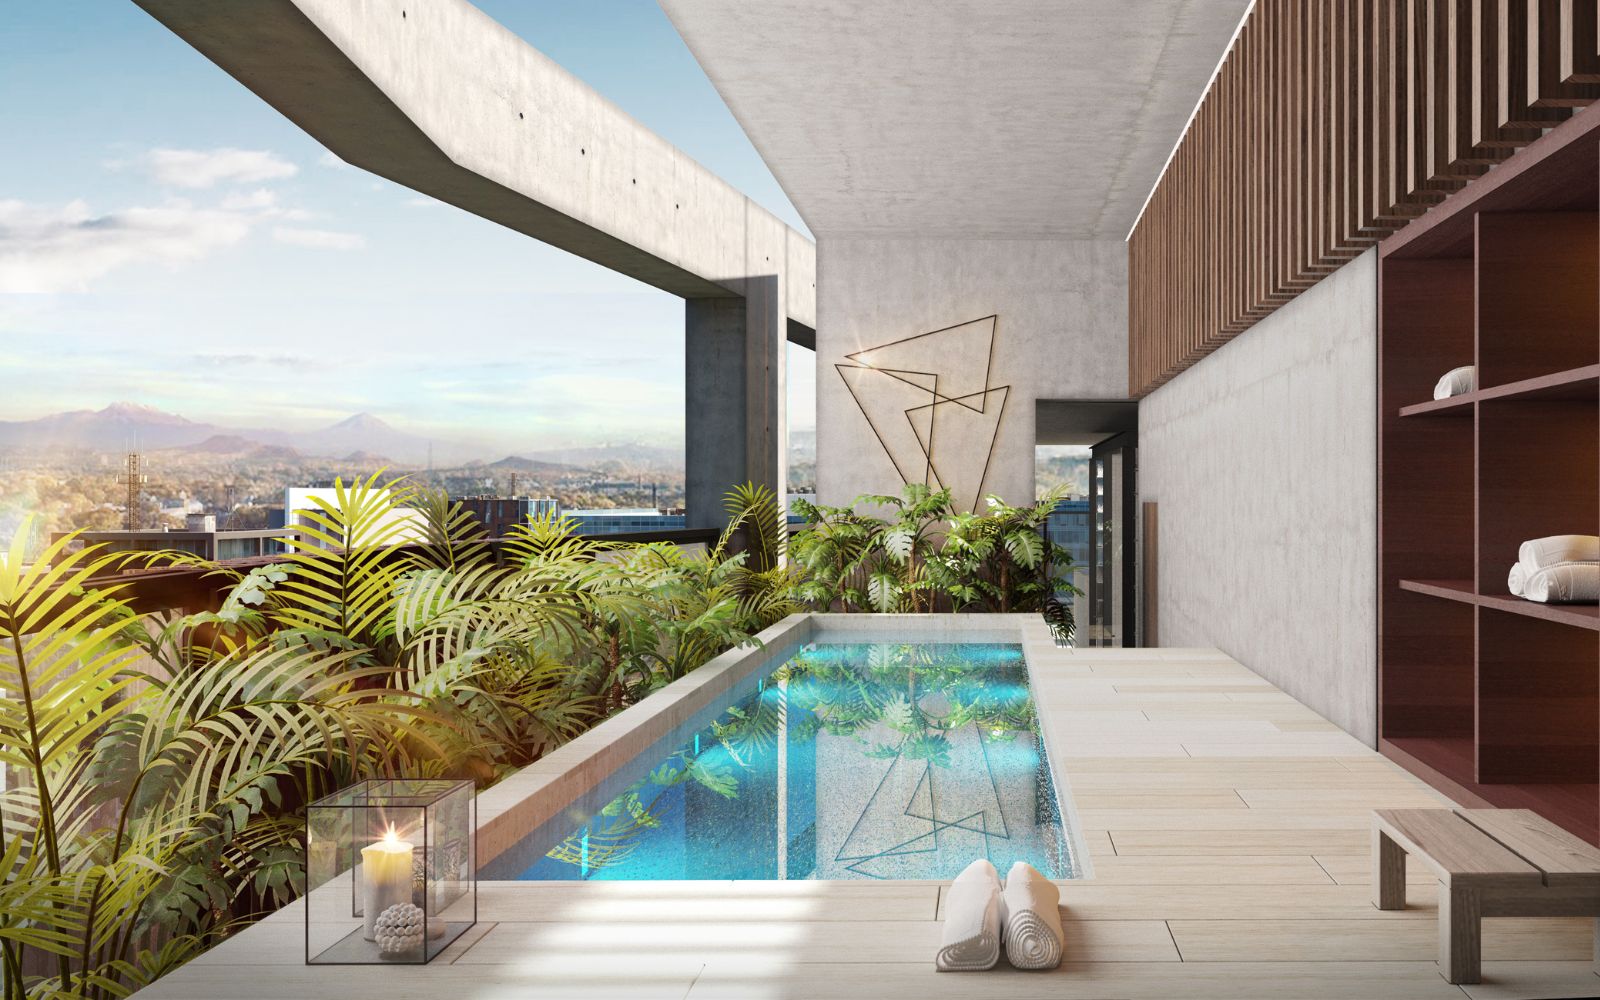 337 m2 penthouse, pool, jacuzzi, spa, pet friendly, for sale Interlomas.